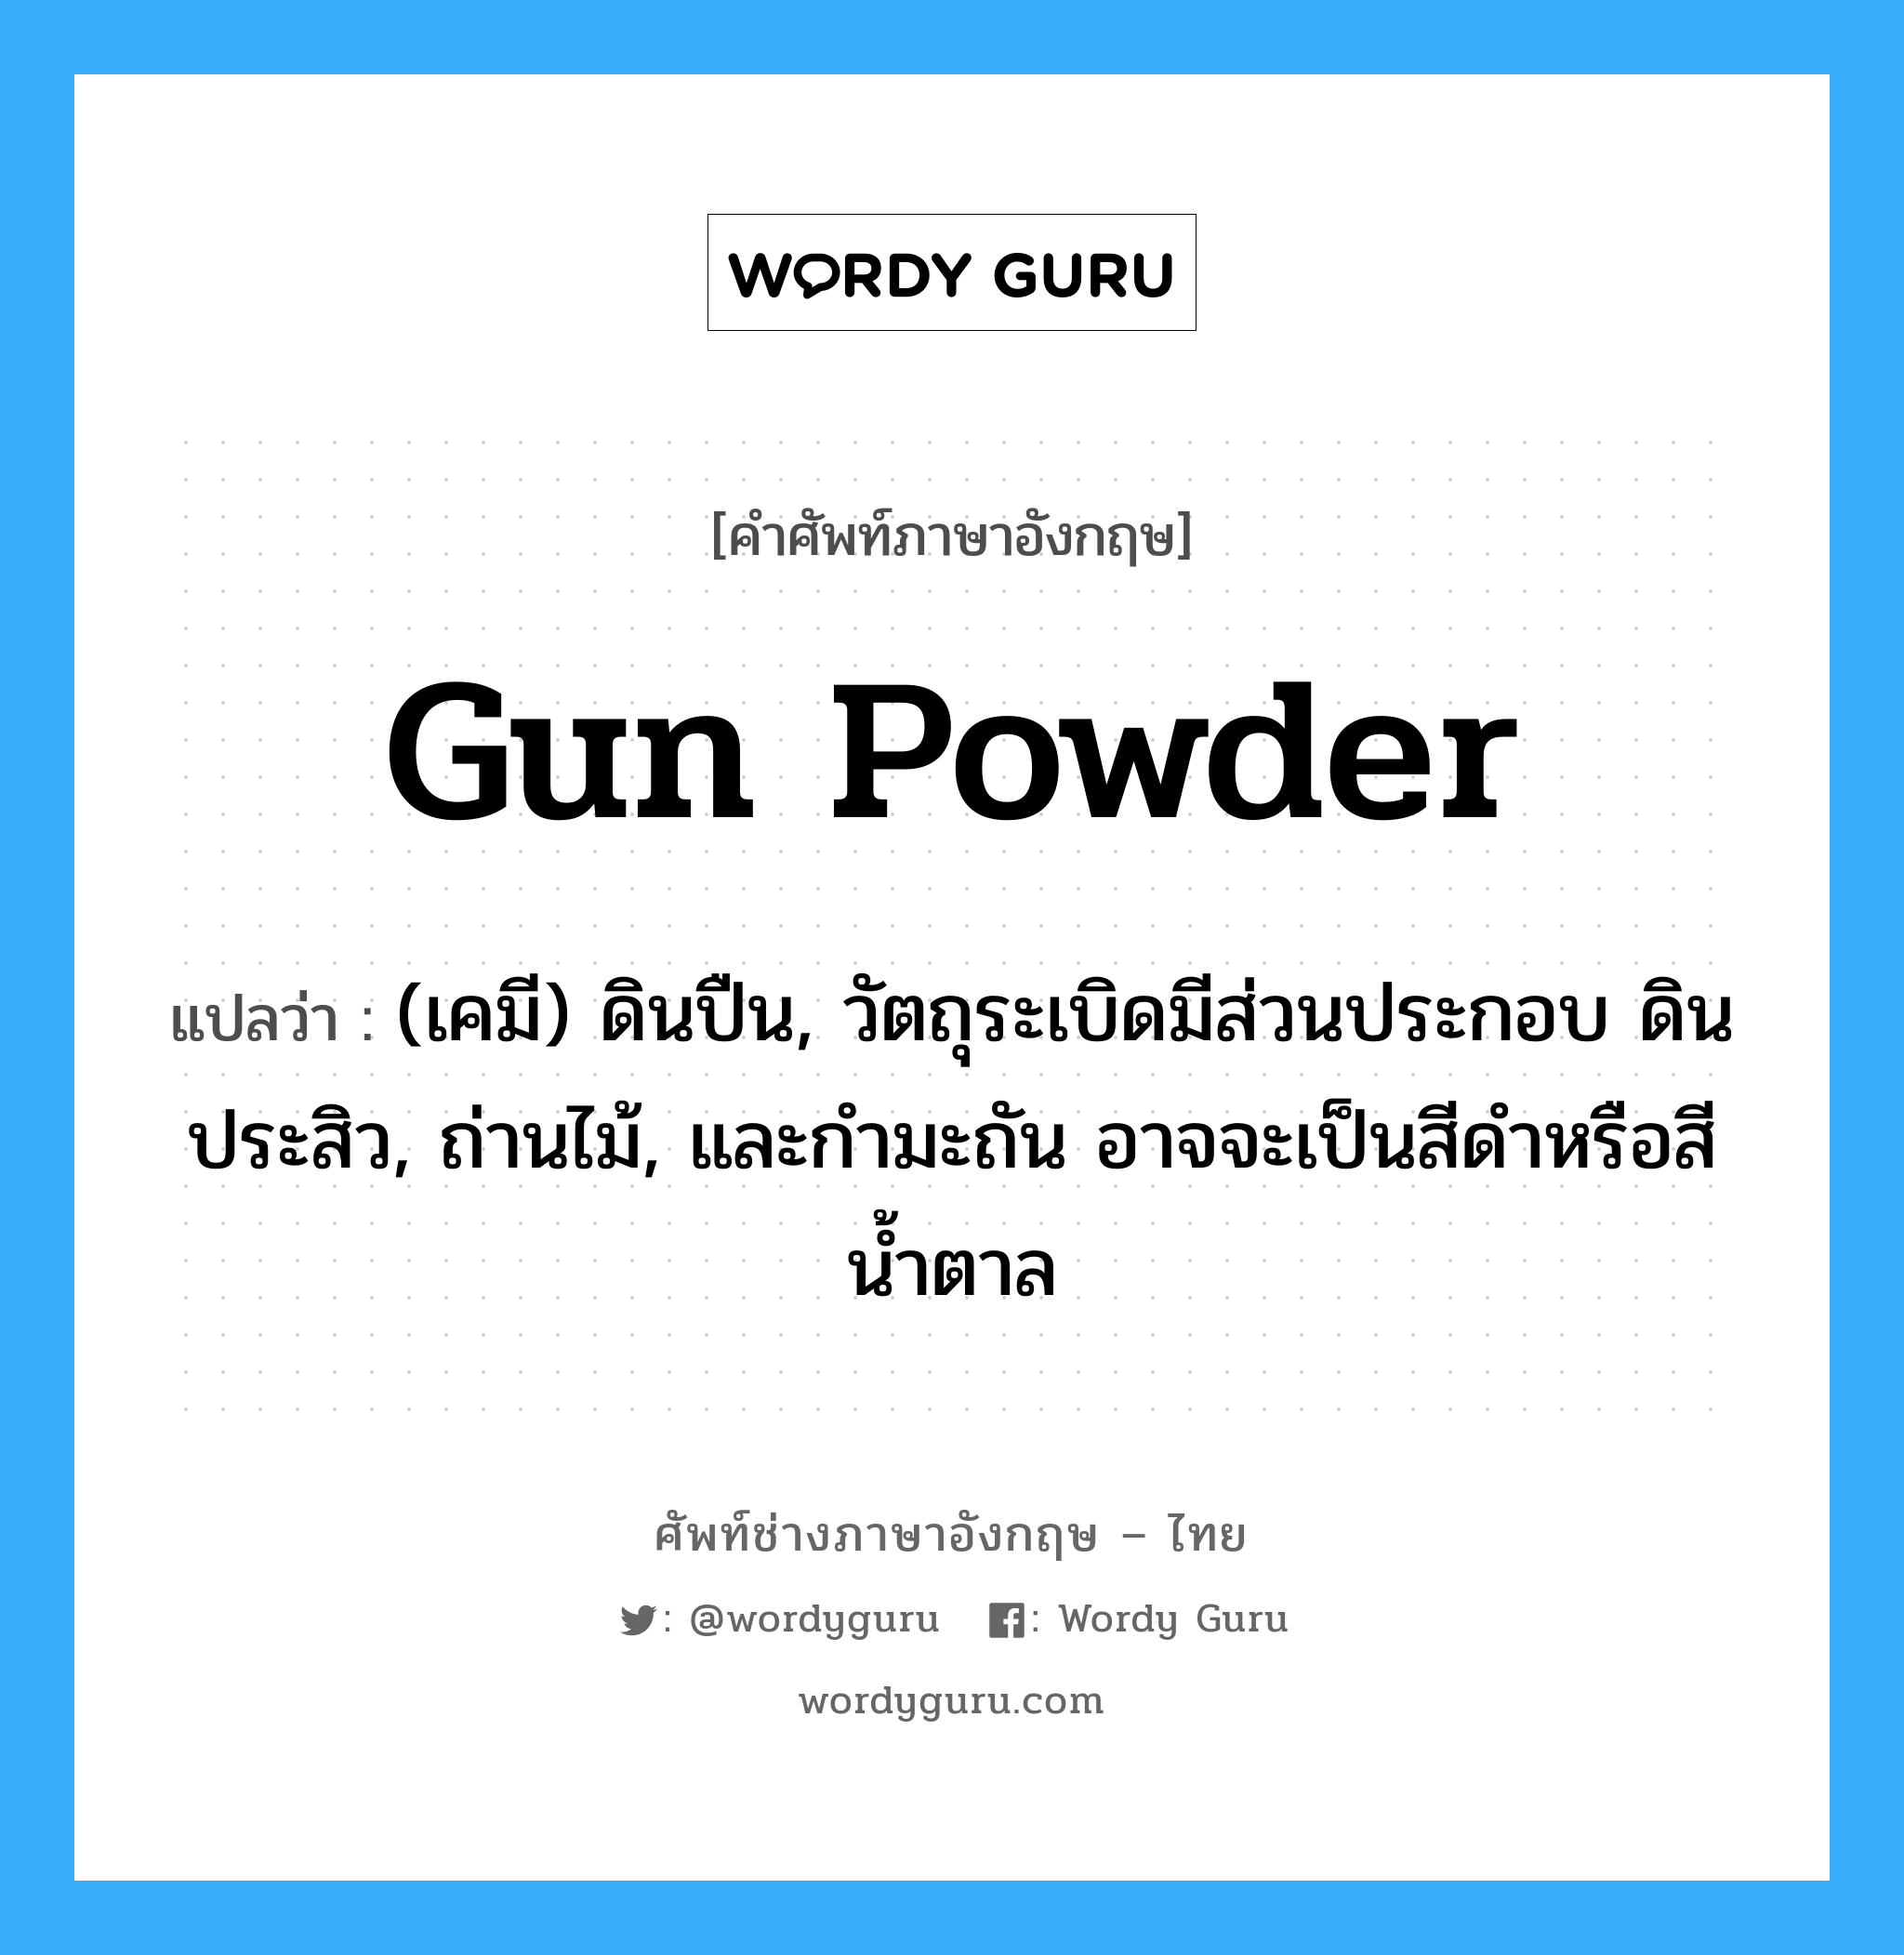 gun powder แปลว่า?, คำศัพท์ช่างภาษาอังกฤษ - ไทย gun powder คำศัพท์ภาษาอังกฤษ gun powder แปลว่า (เคมี) ดินปืน, วัตถุระเบิดมีส่วนประกอบ ดินประสิว, ถ่านไม้, และกำมะถัน อาจจะเป็นสีดำหรือสีน้ำตาล